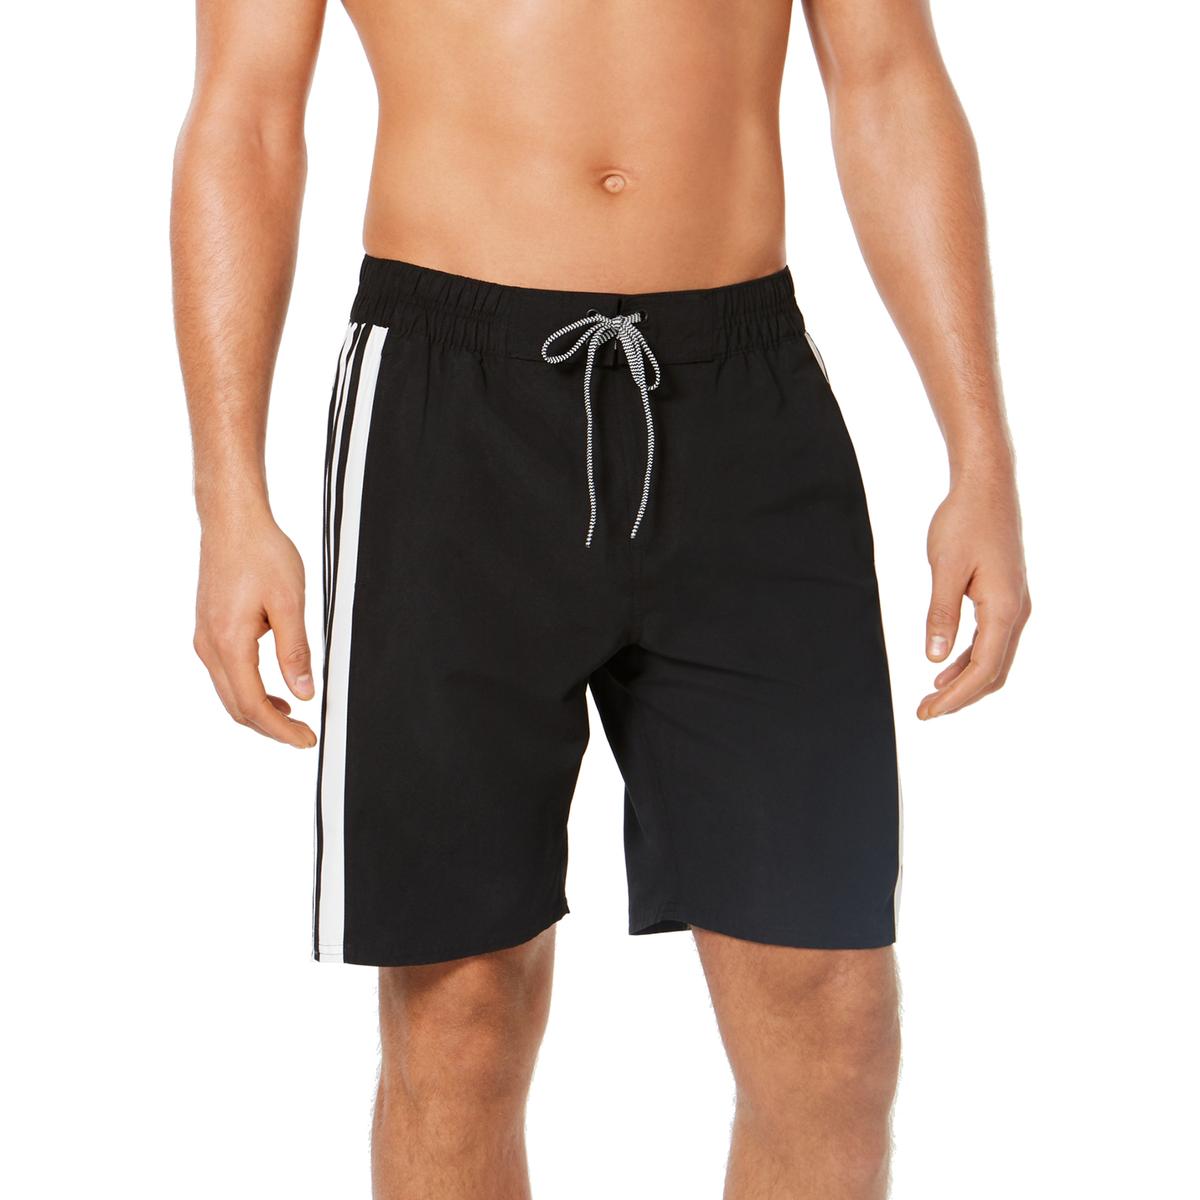 Adidas Mens Black Beach Wear Summer Board Shorts Swim Trunks XL BHFO ...